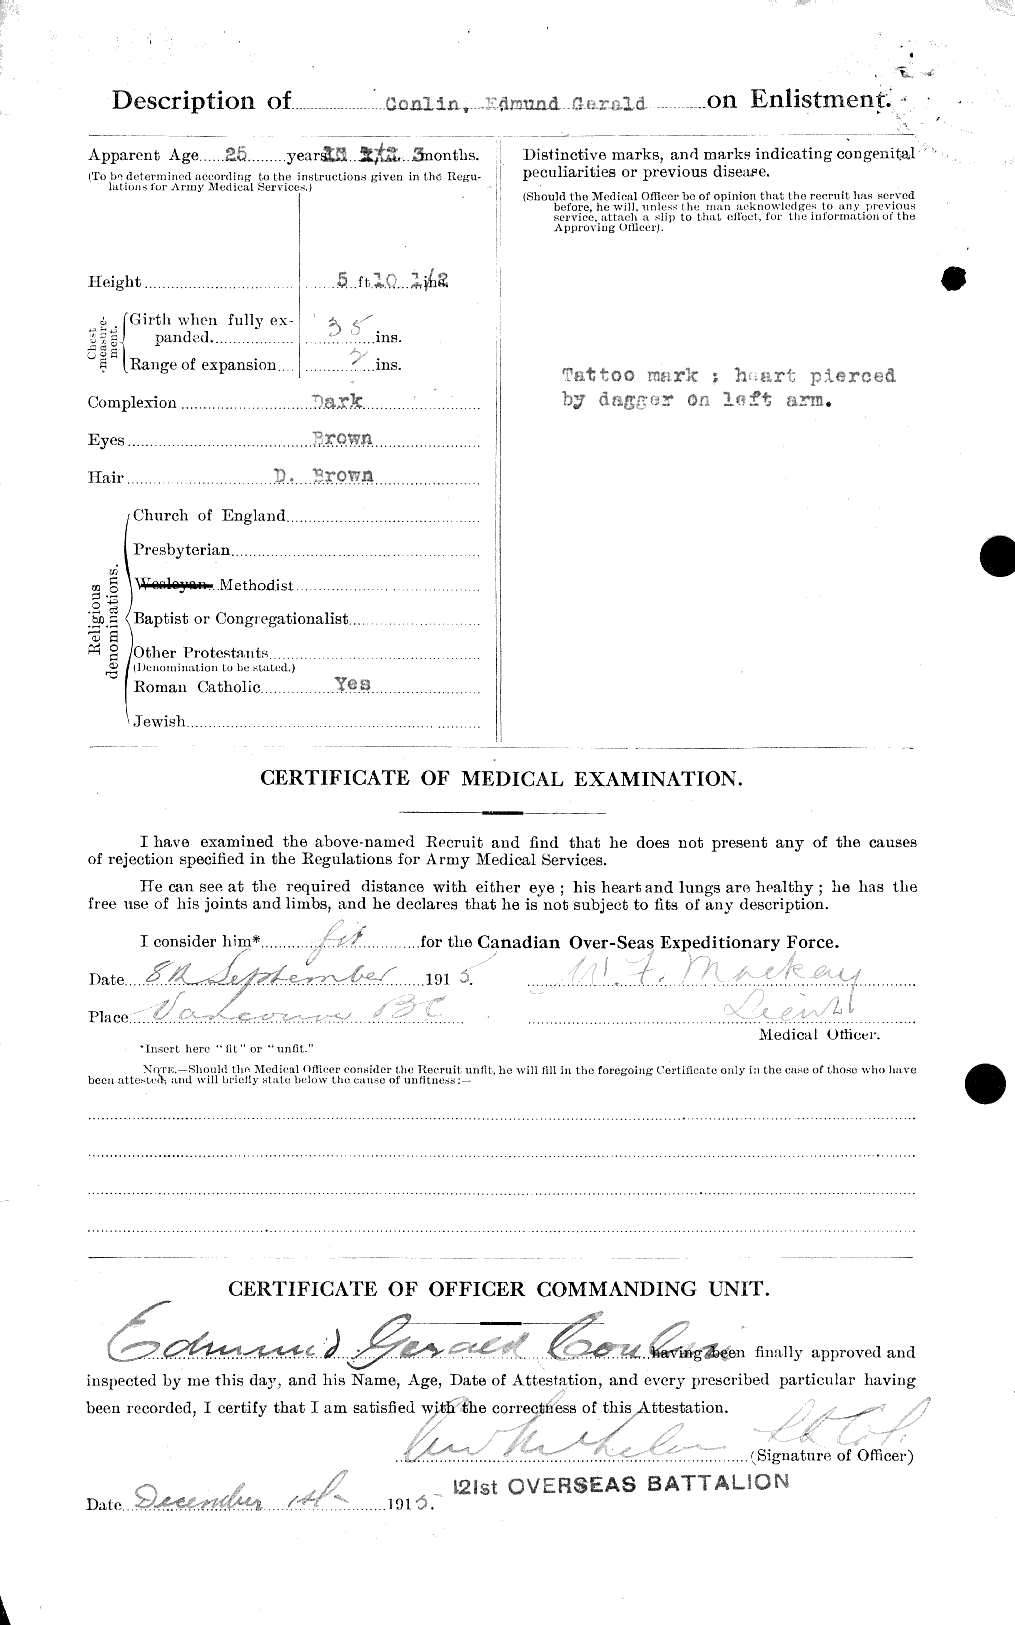 Dossiers du Personnel de la Première Guerre mondiale - CEC 035962b